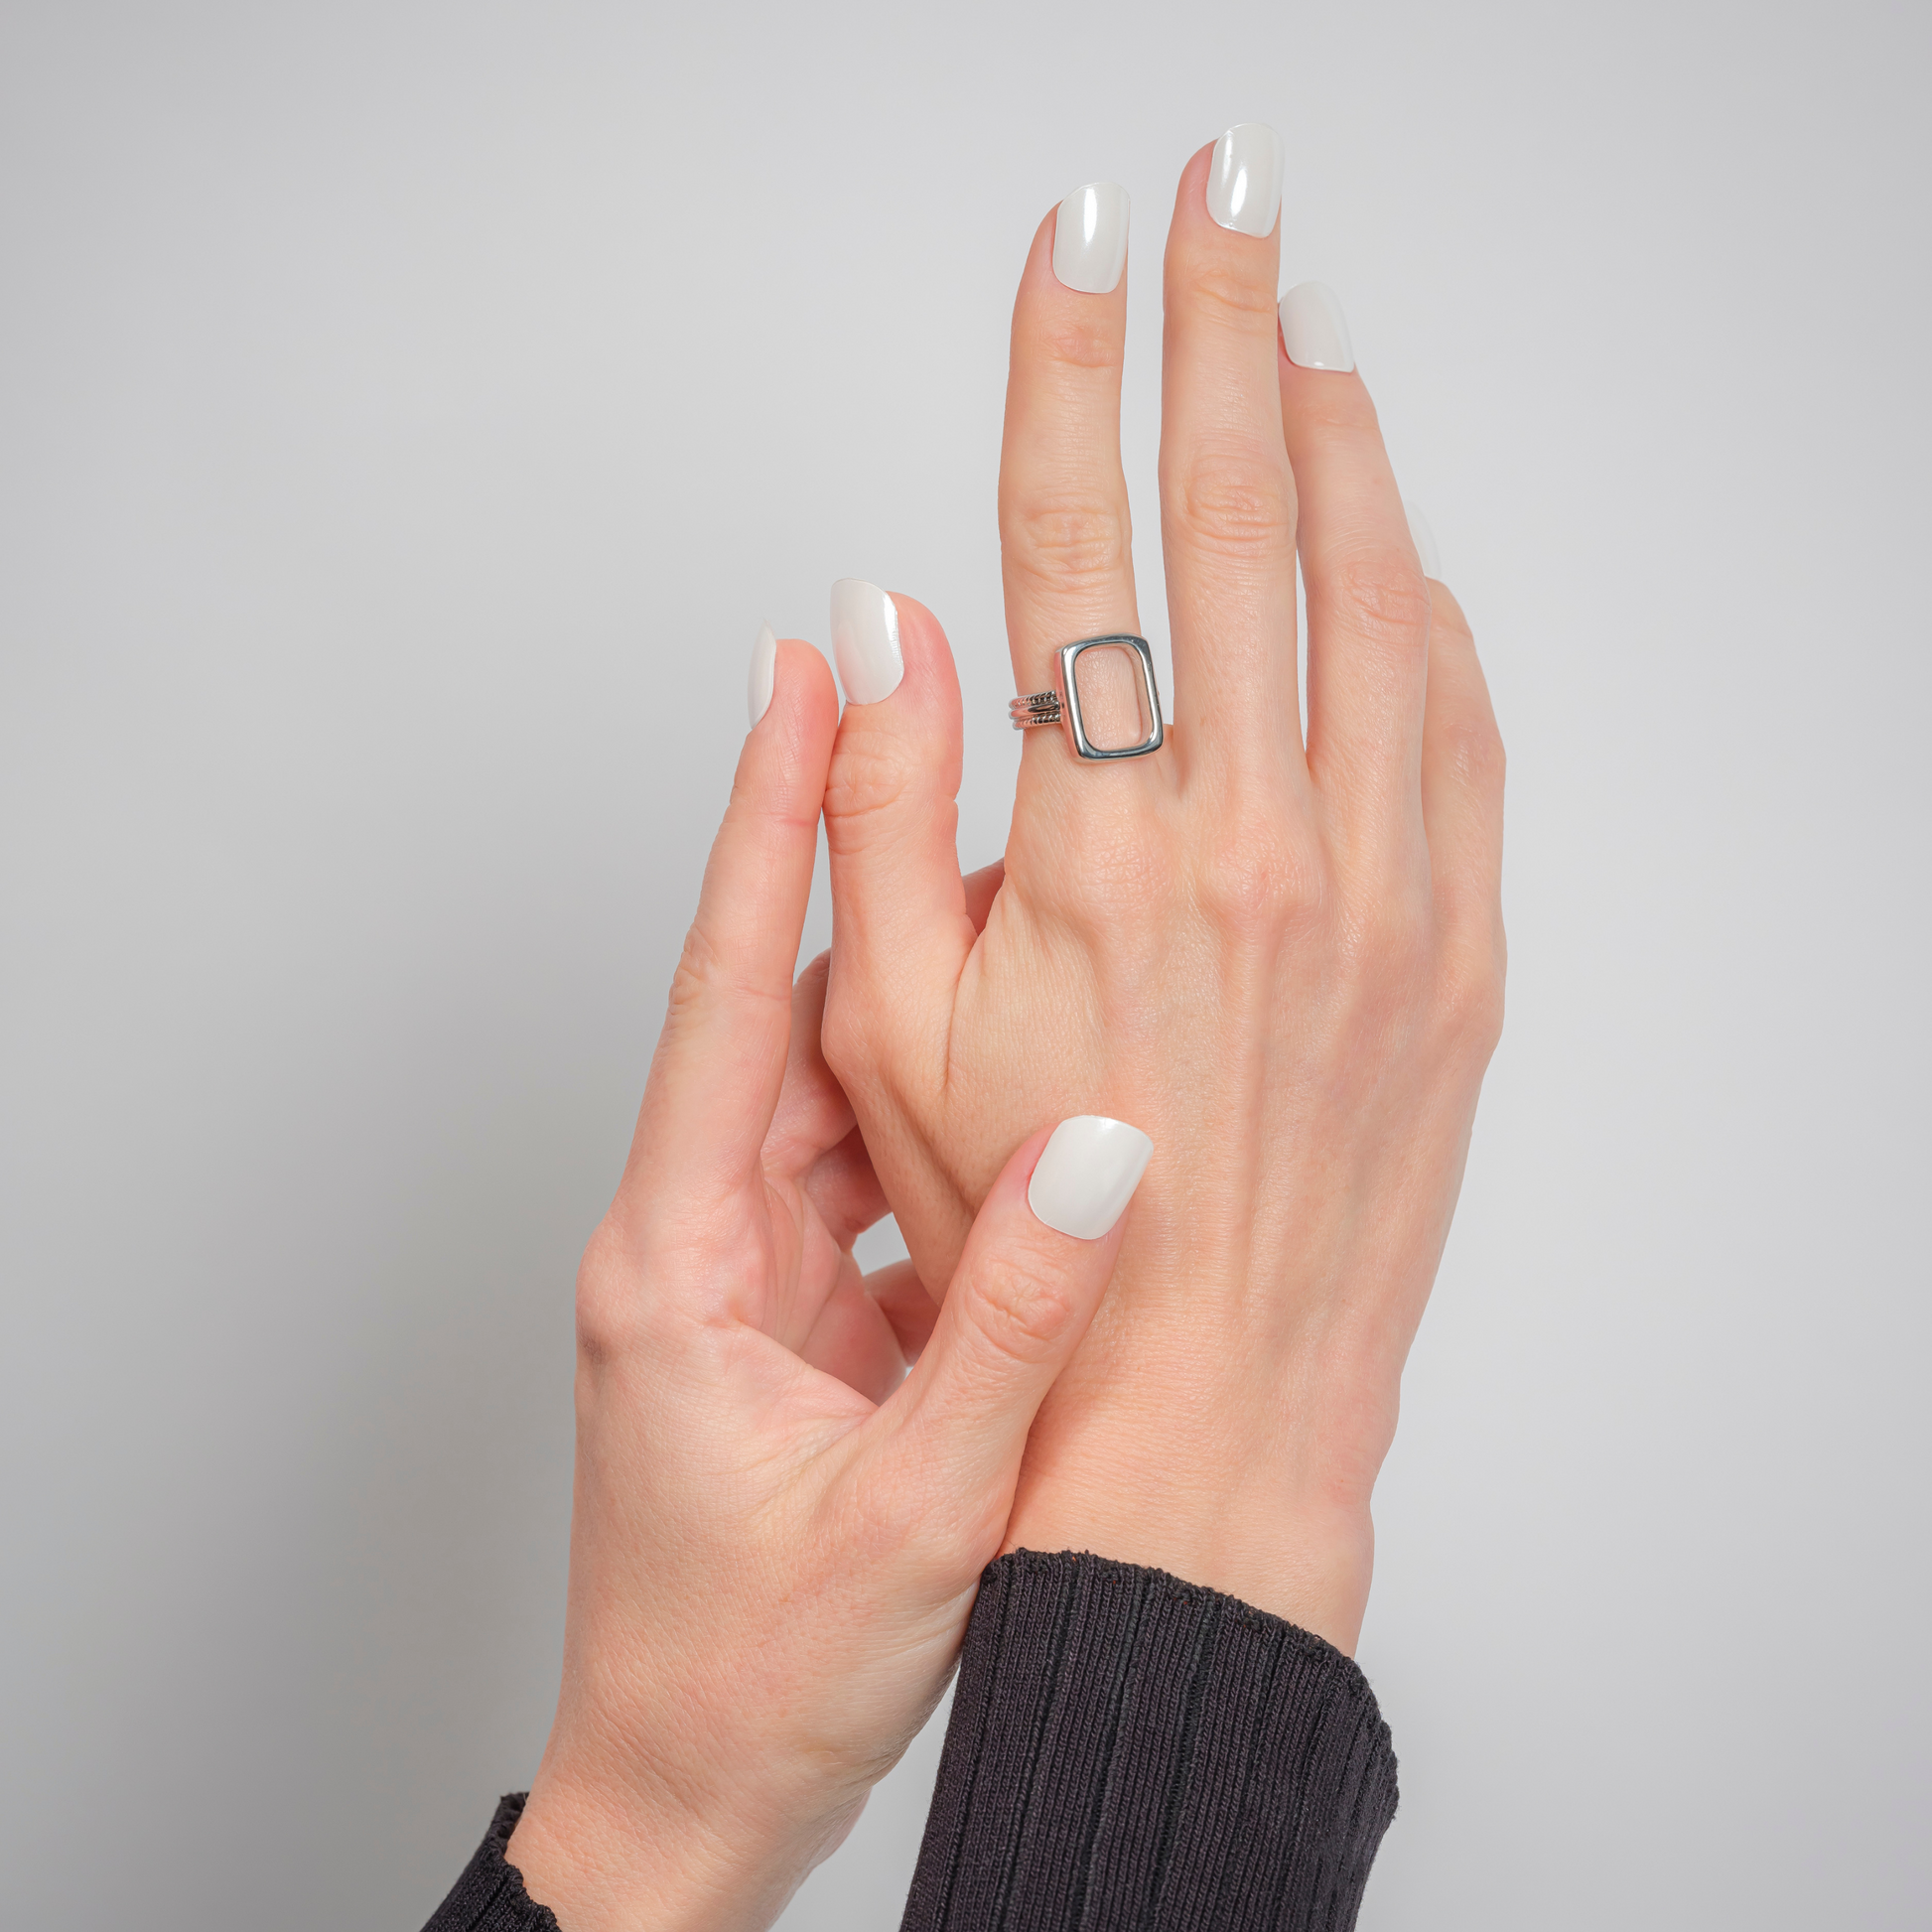 PEARL WHITE - NAILOG semi cured nail strip